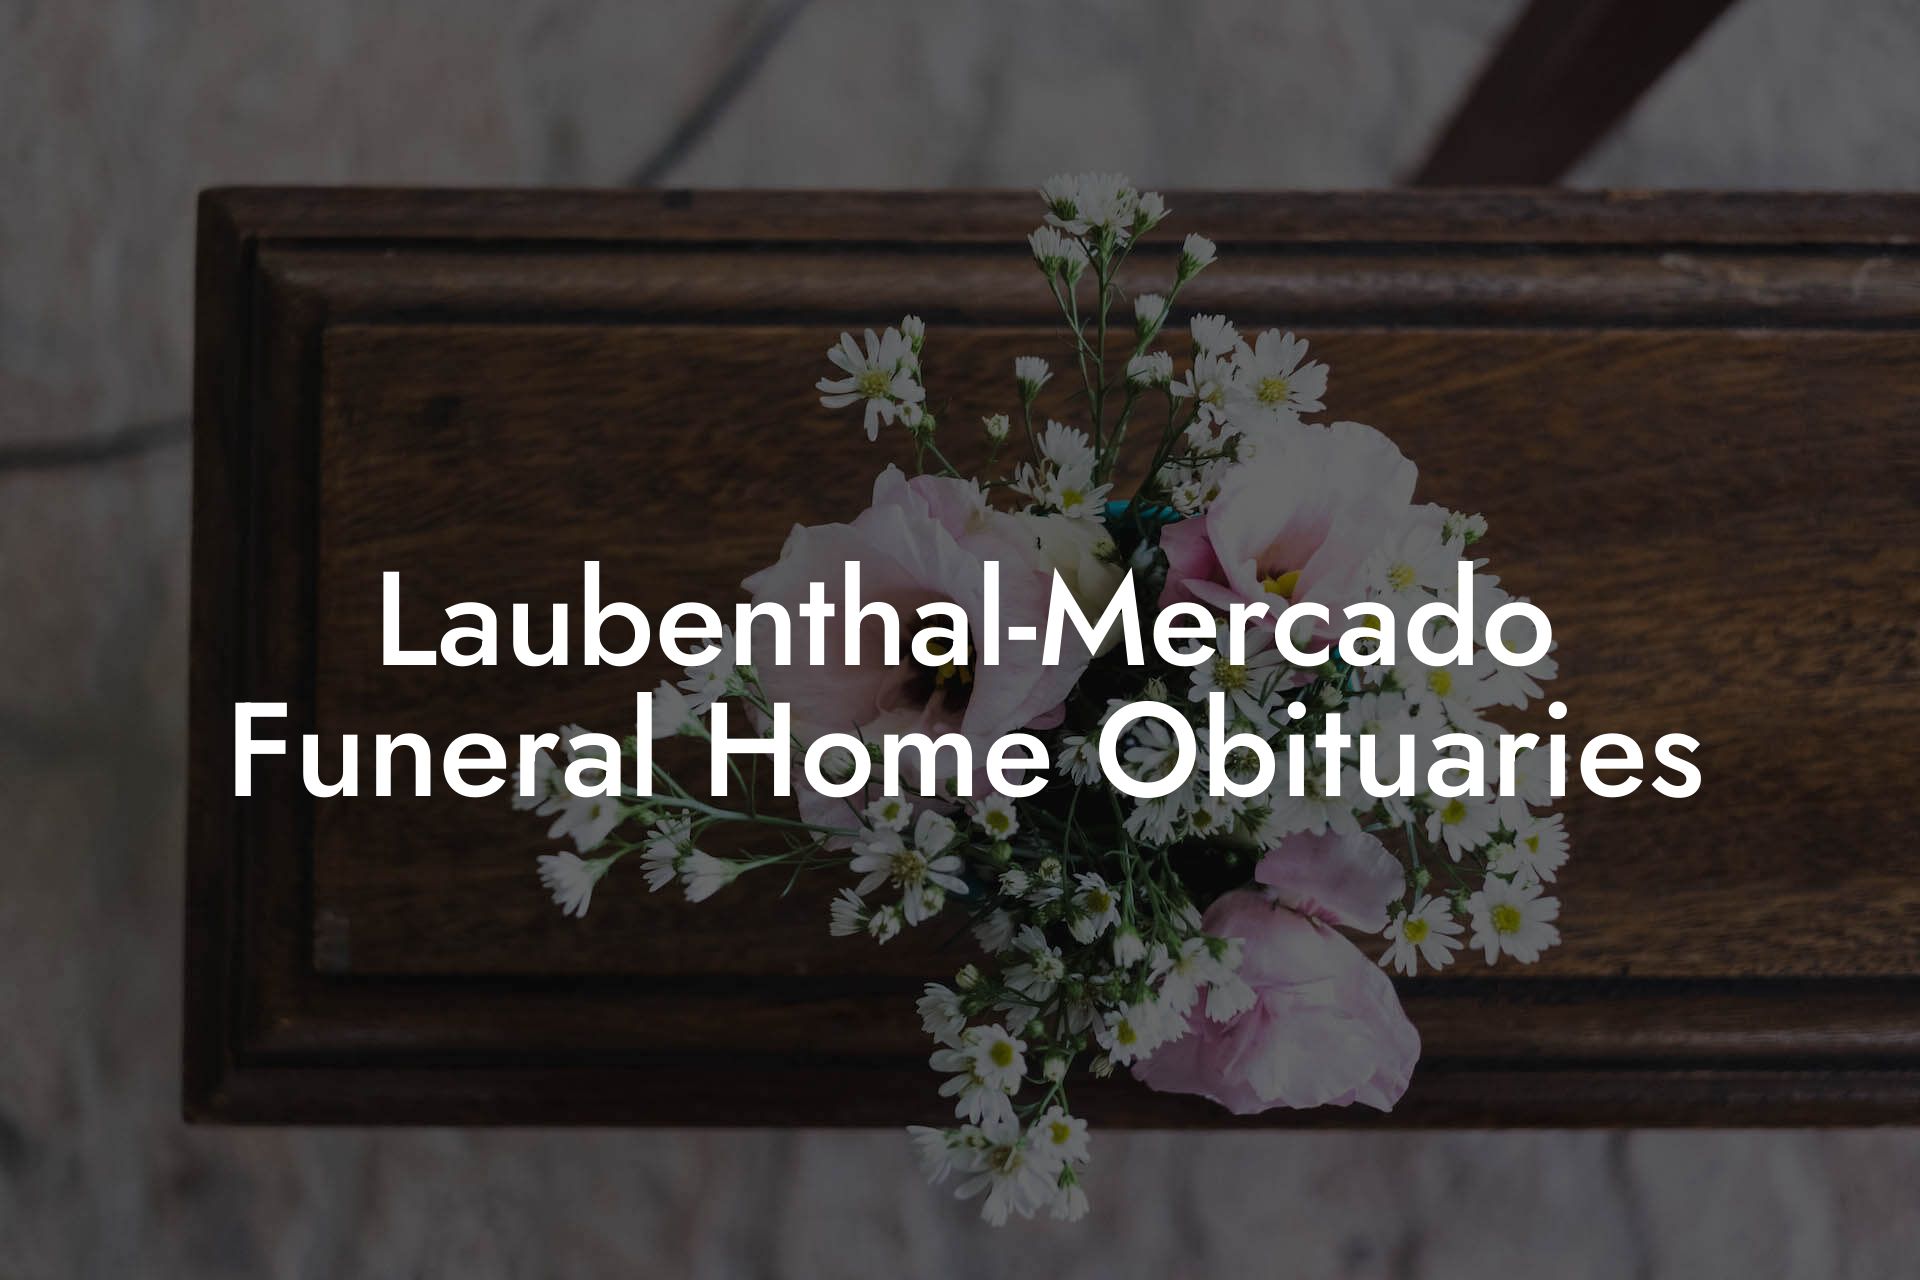 Laubenthal-Mercado Funeral Home Obituaries